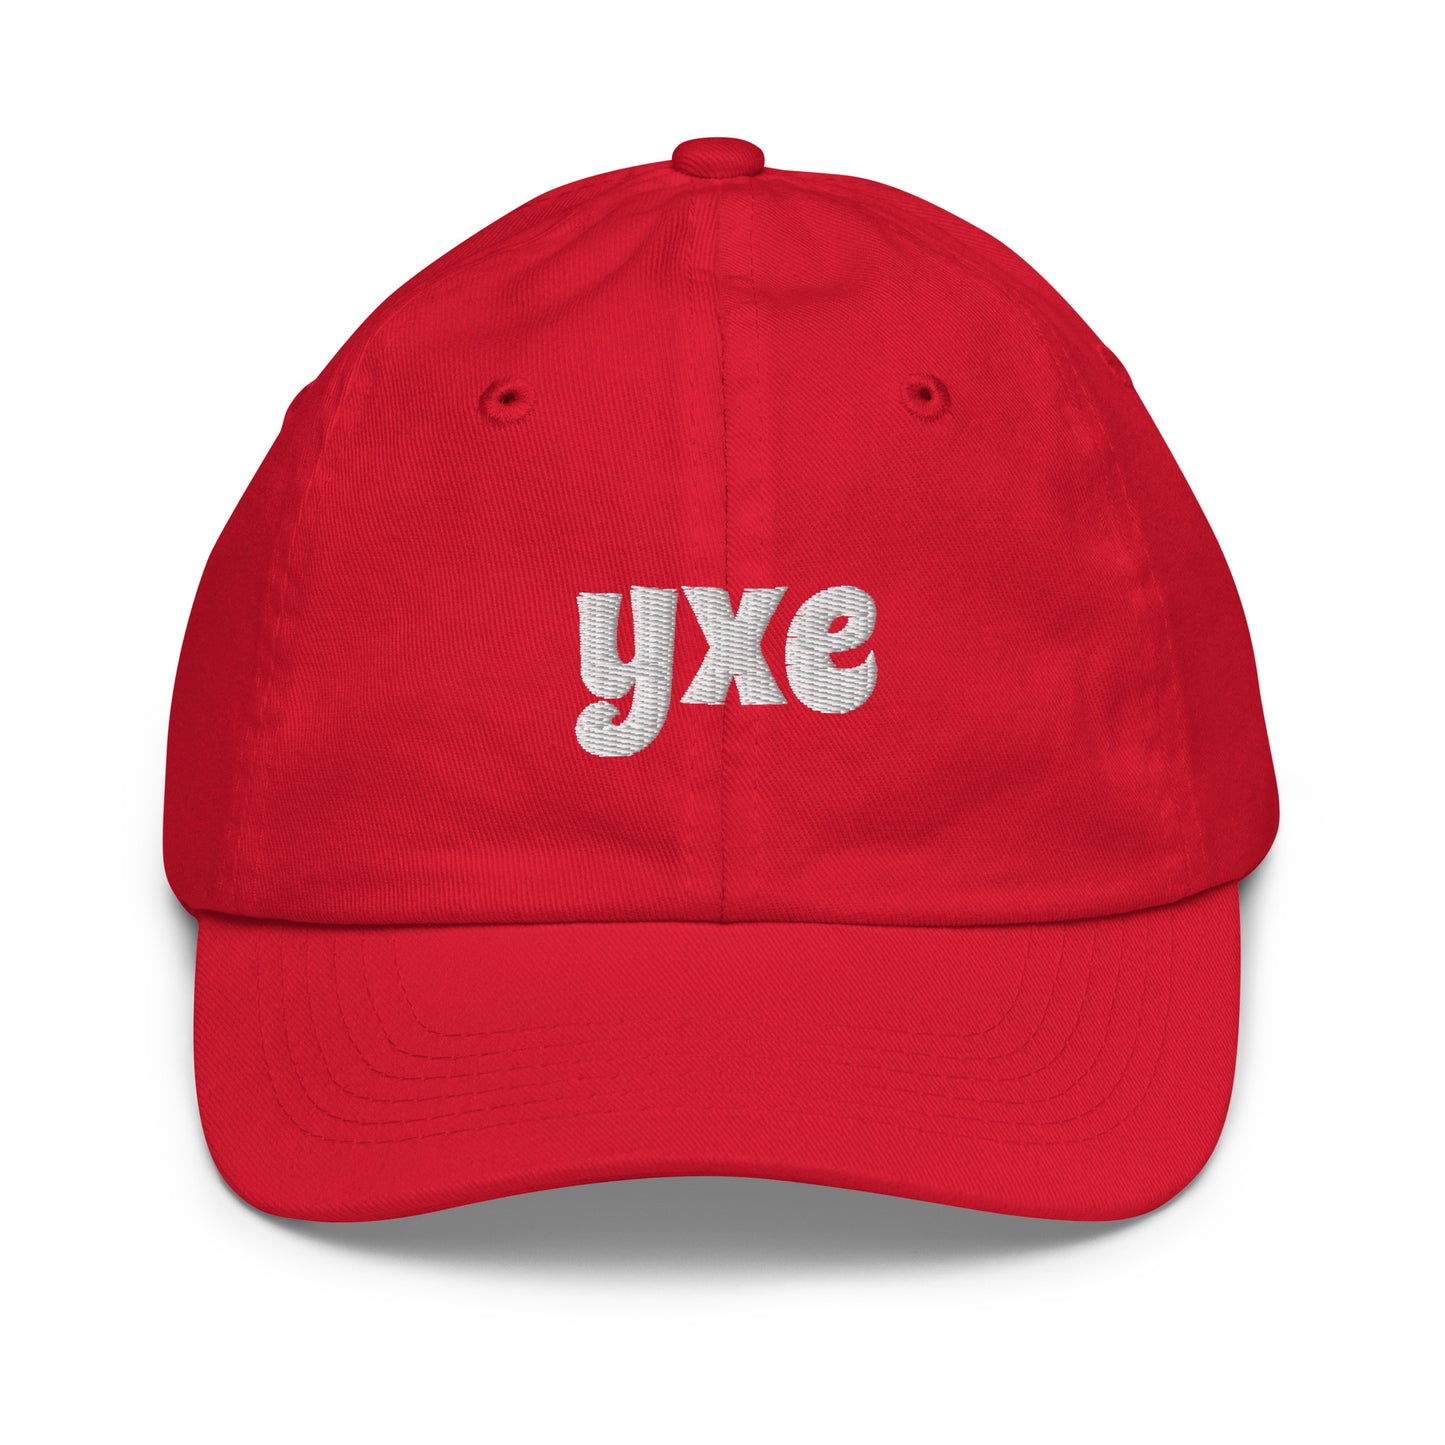 Groovy Kid's Baseball Cap - White • YXE Saskatoon • YHM Designs - Image 13